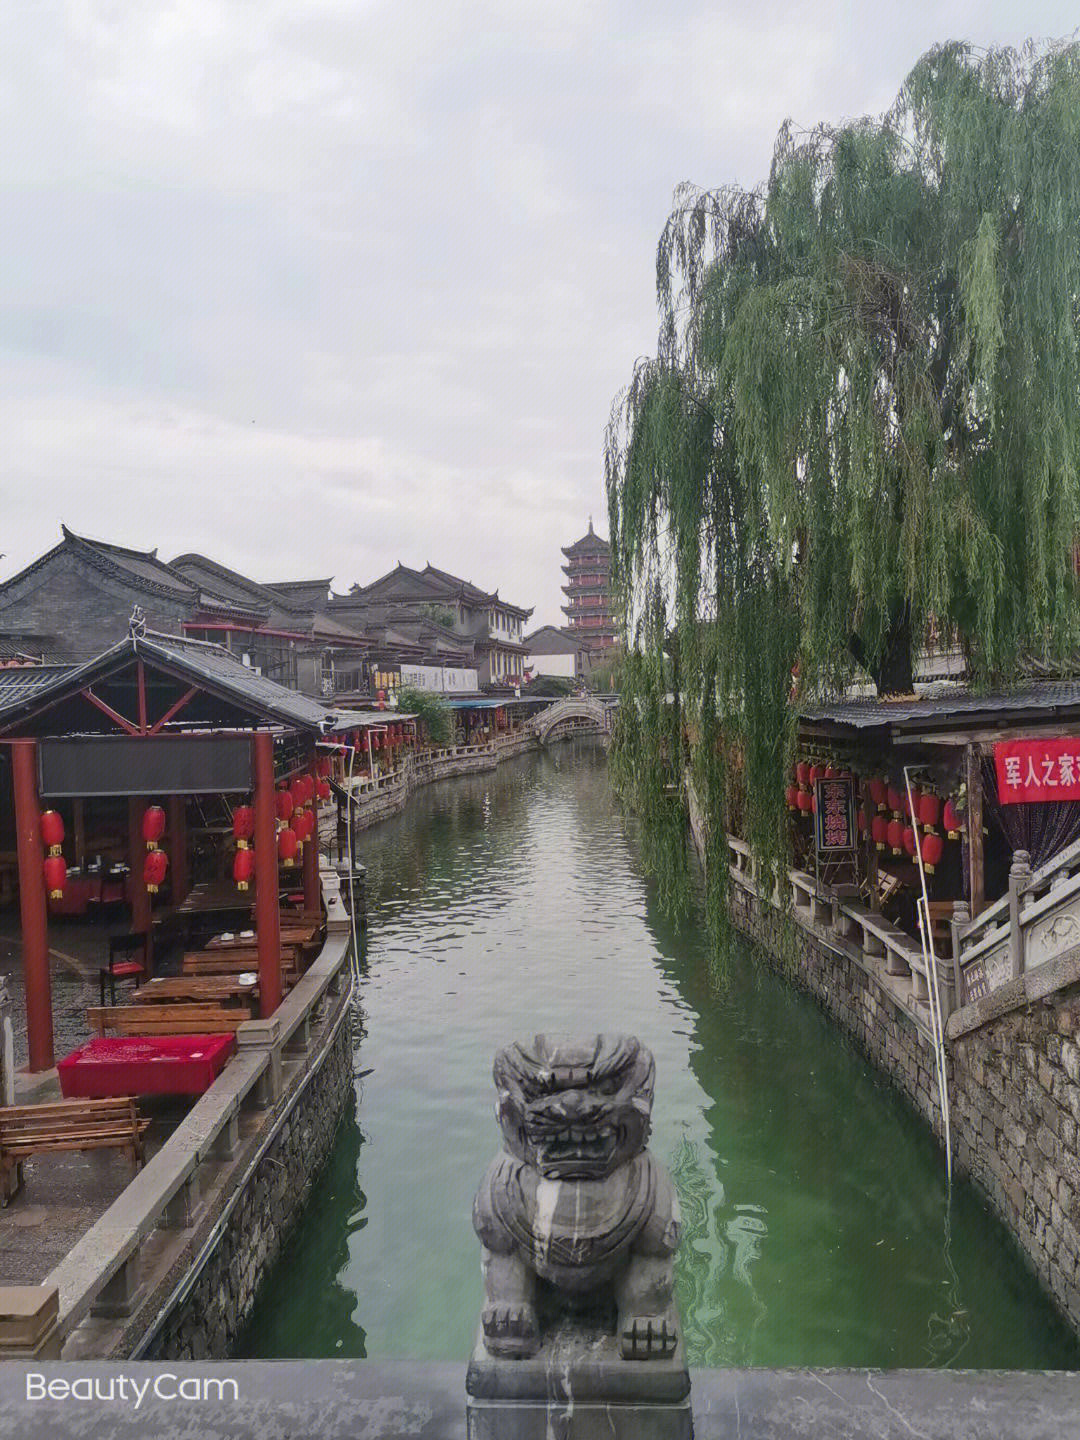 滦州古城进入位于唐山滦县的滦州古城,进入的不是旅游景点,而是另一种